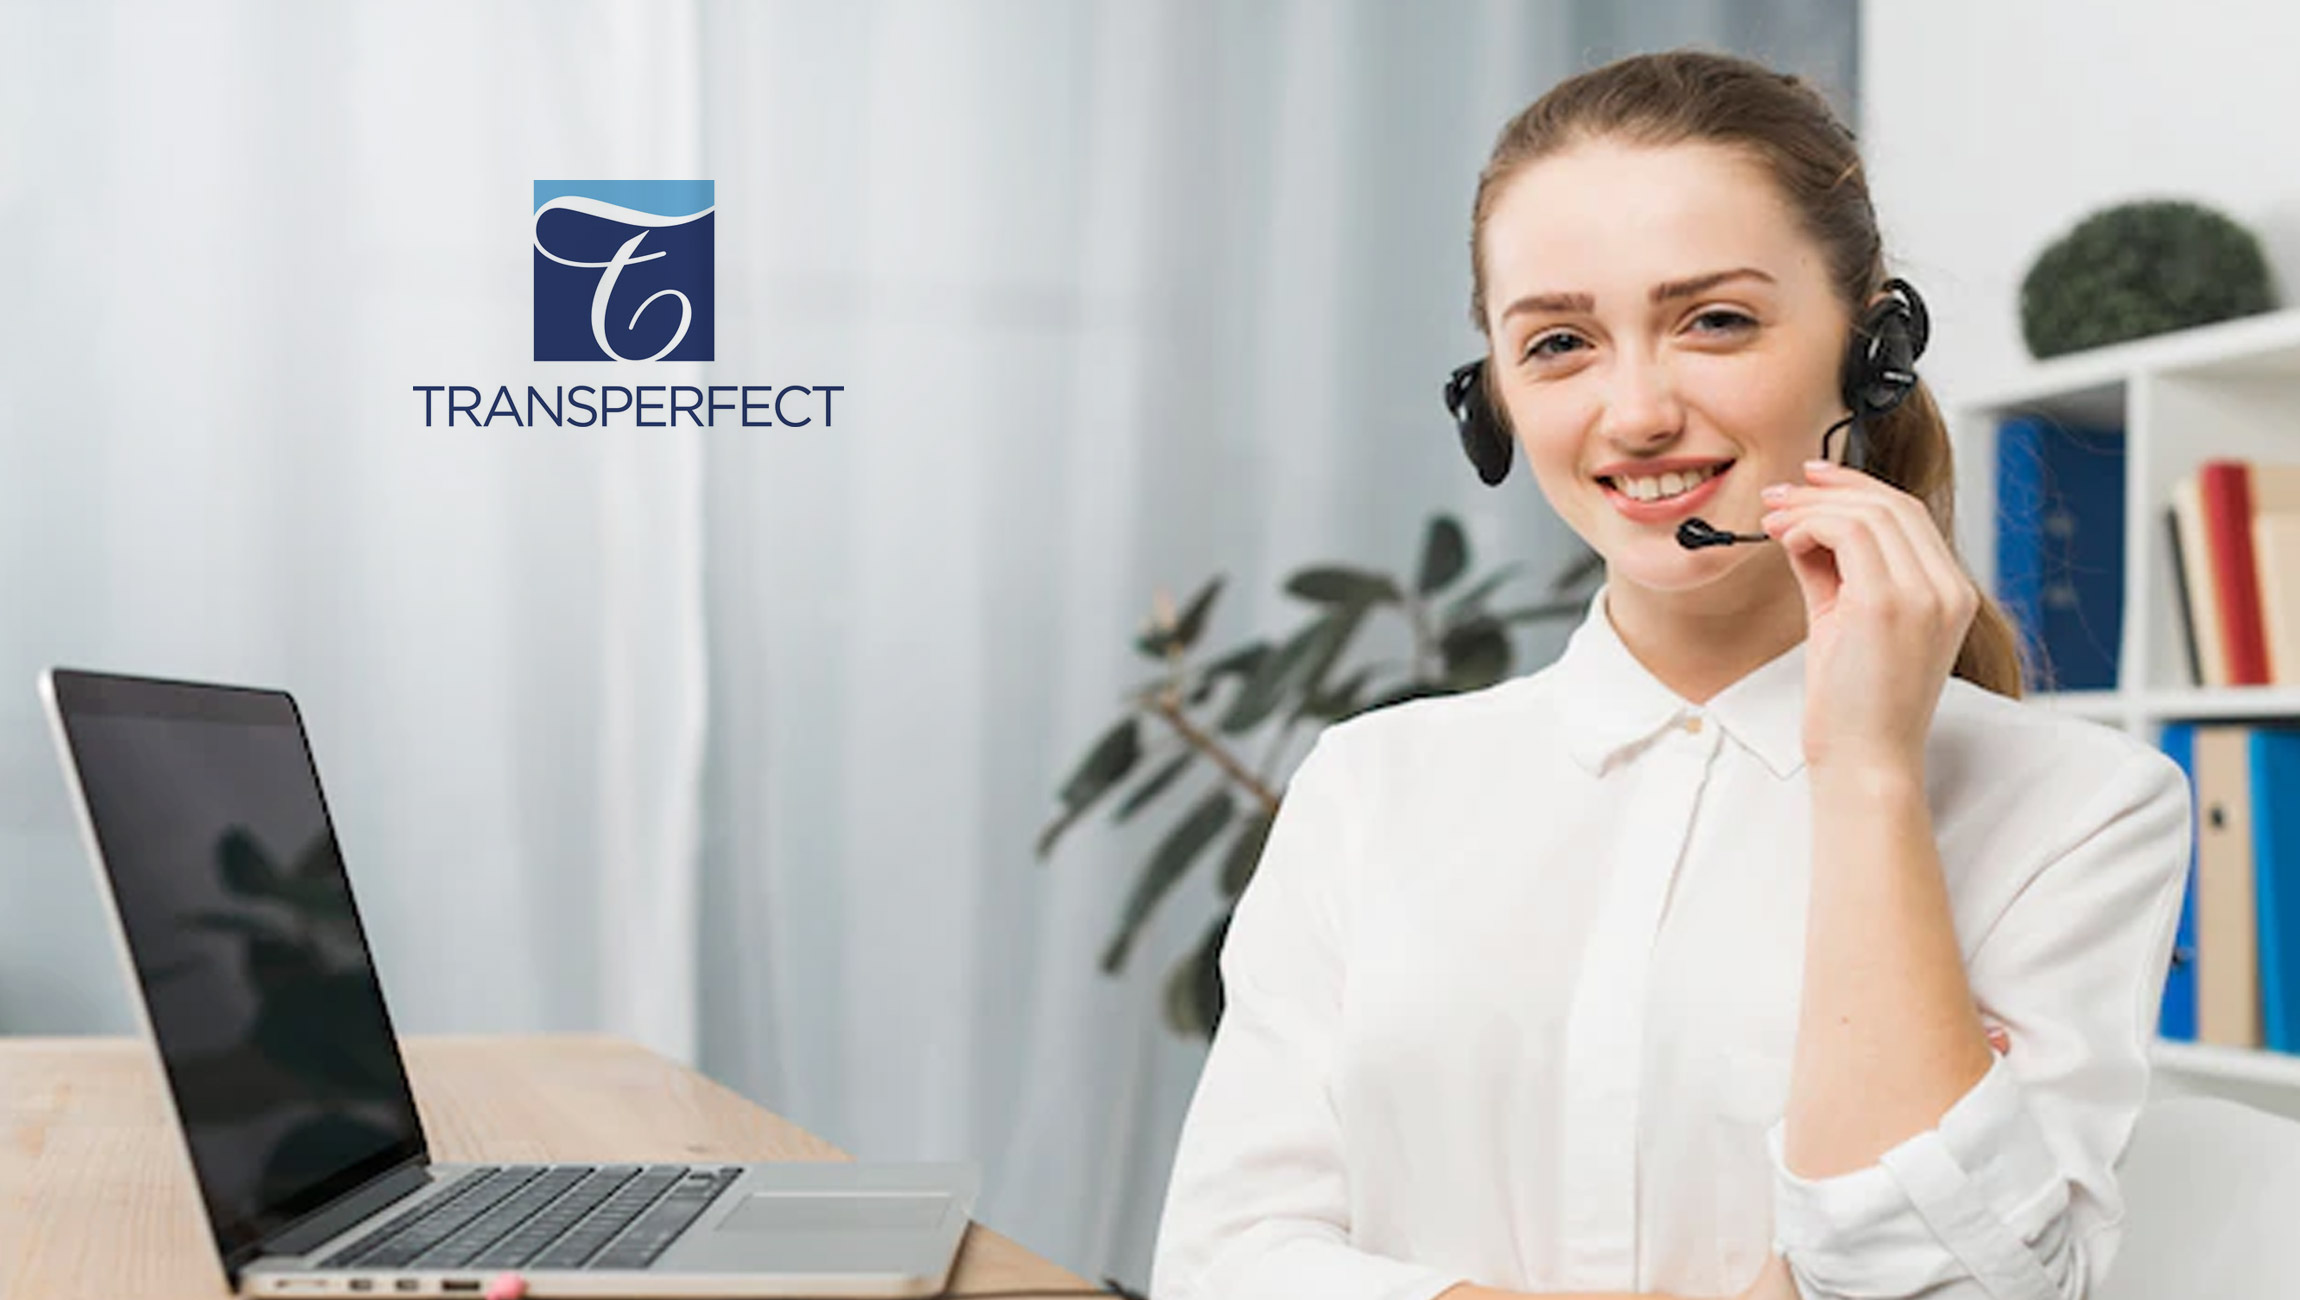 TransPerfect Announces New Contact Center in Santo Domingo, Dominican Republic